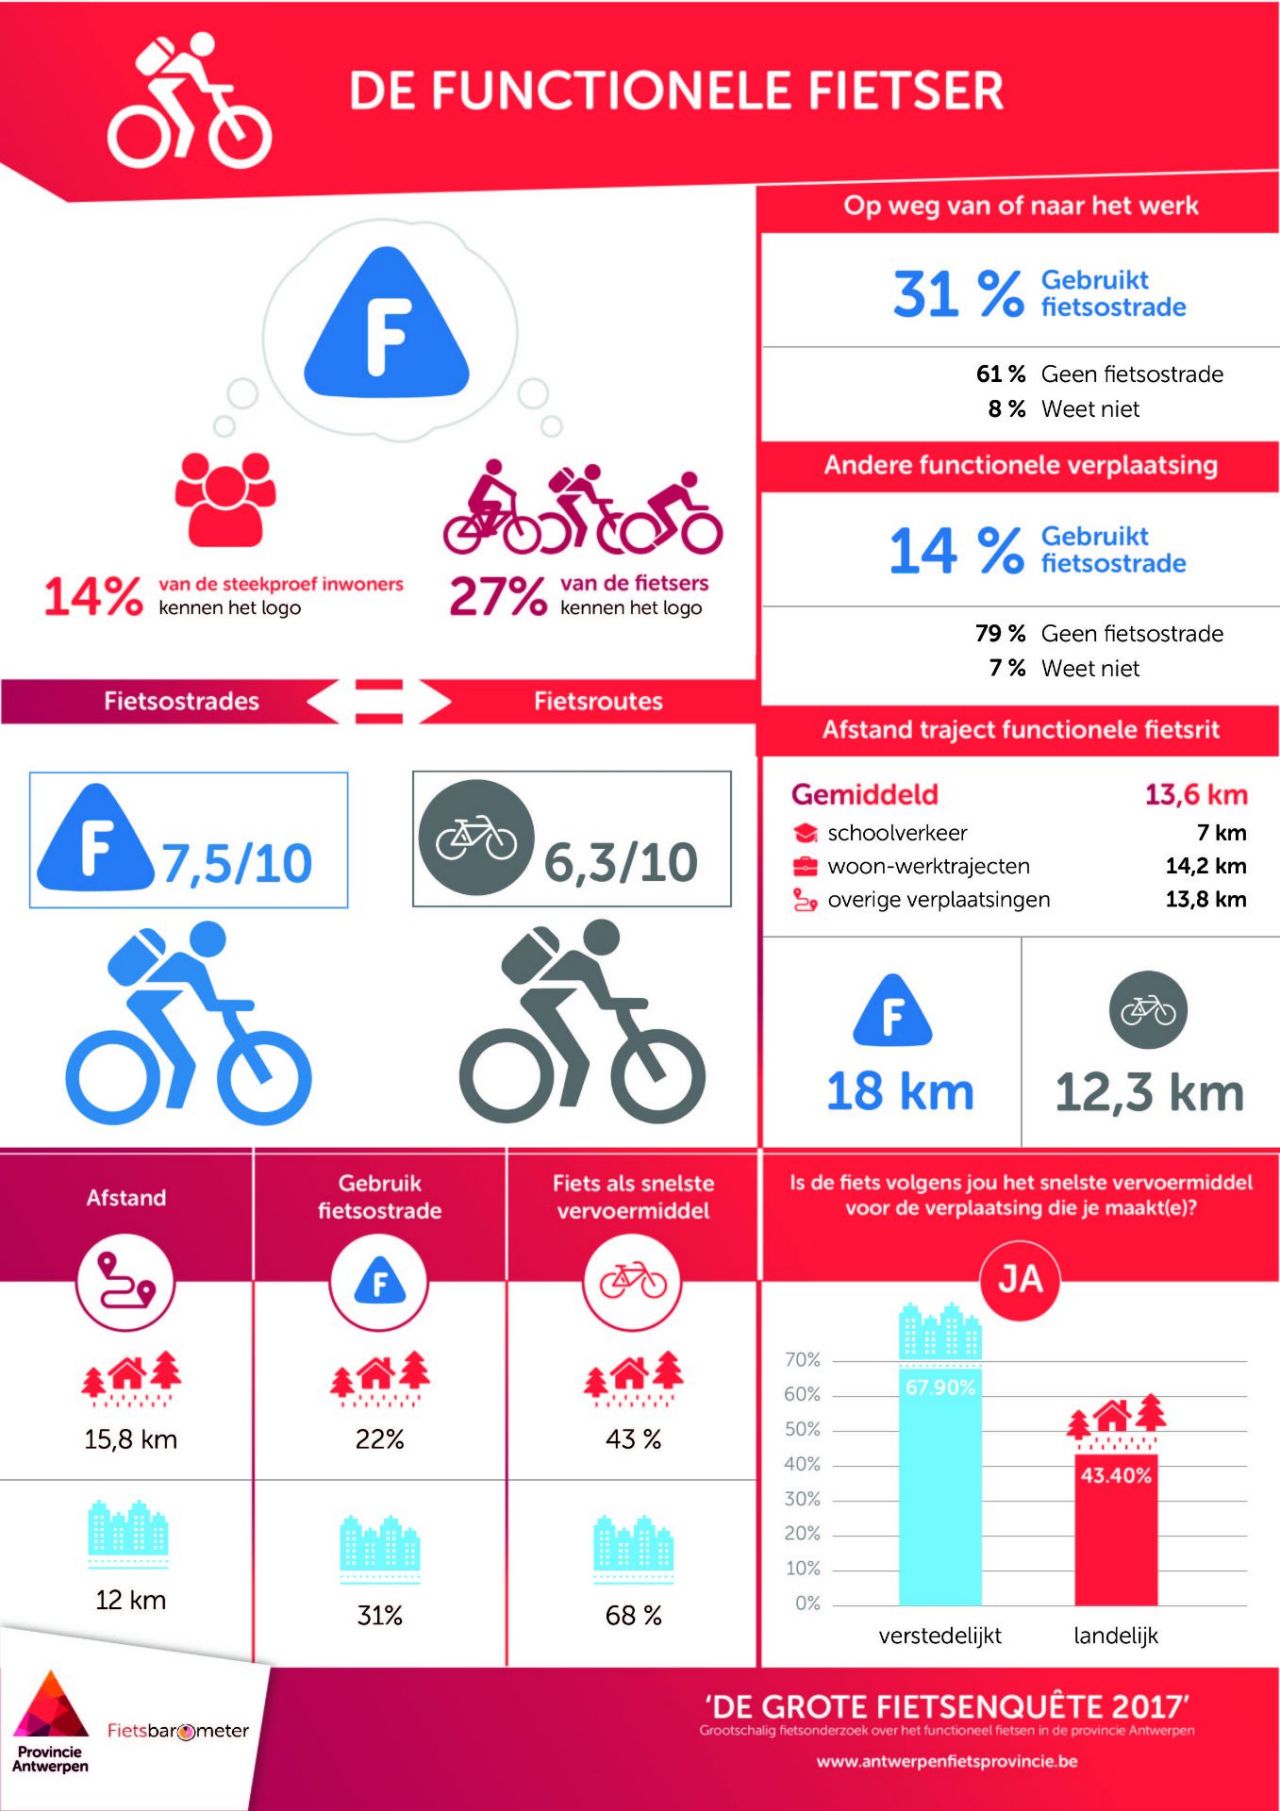 Infographic de functionele fietser